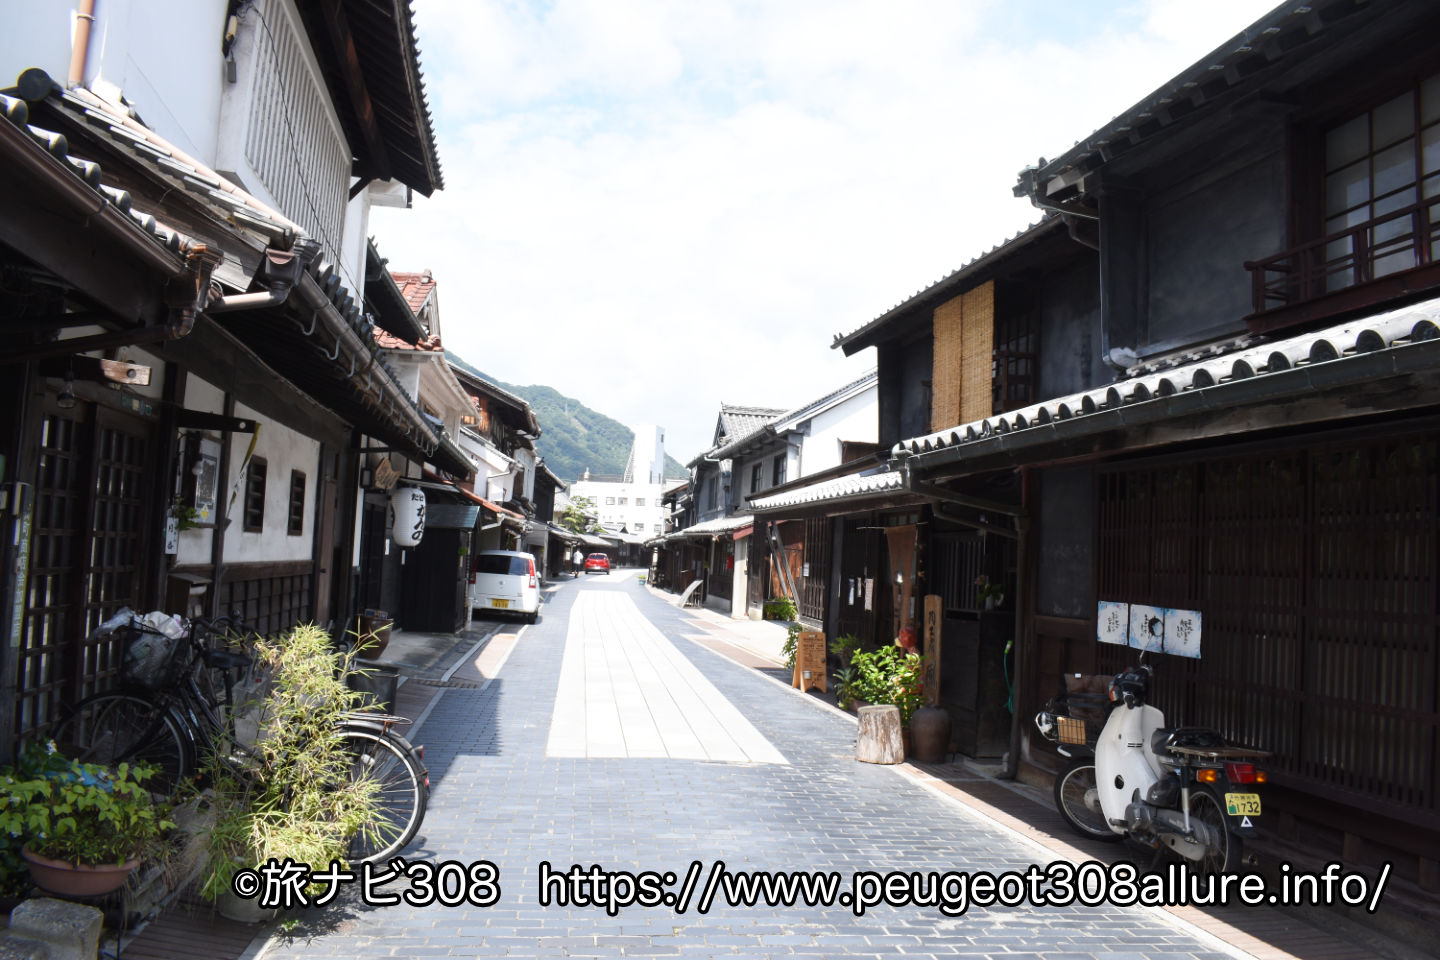 広島県竹原市を巡る車中泊旅！古都の街並みやご当地食材を楽しむ